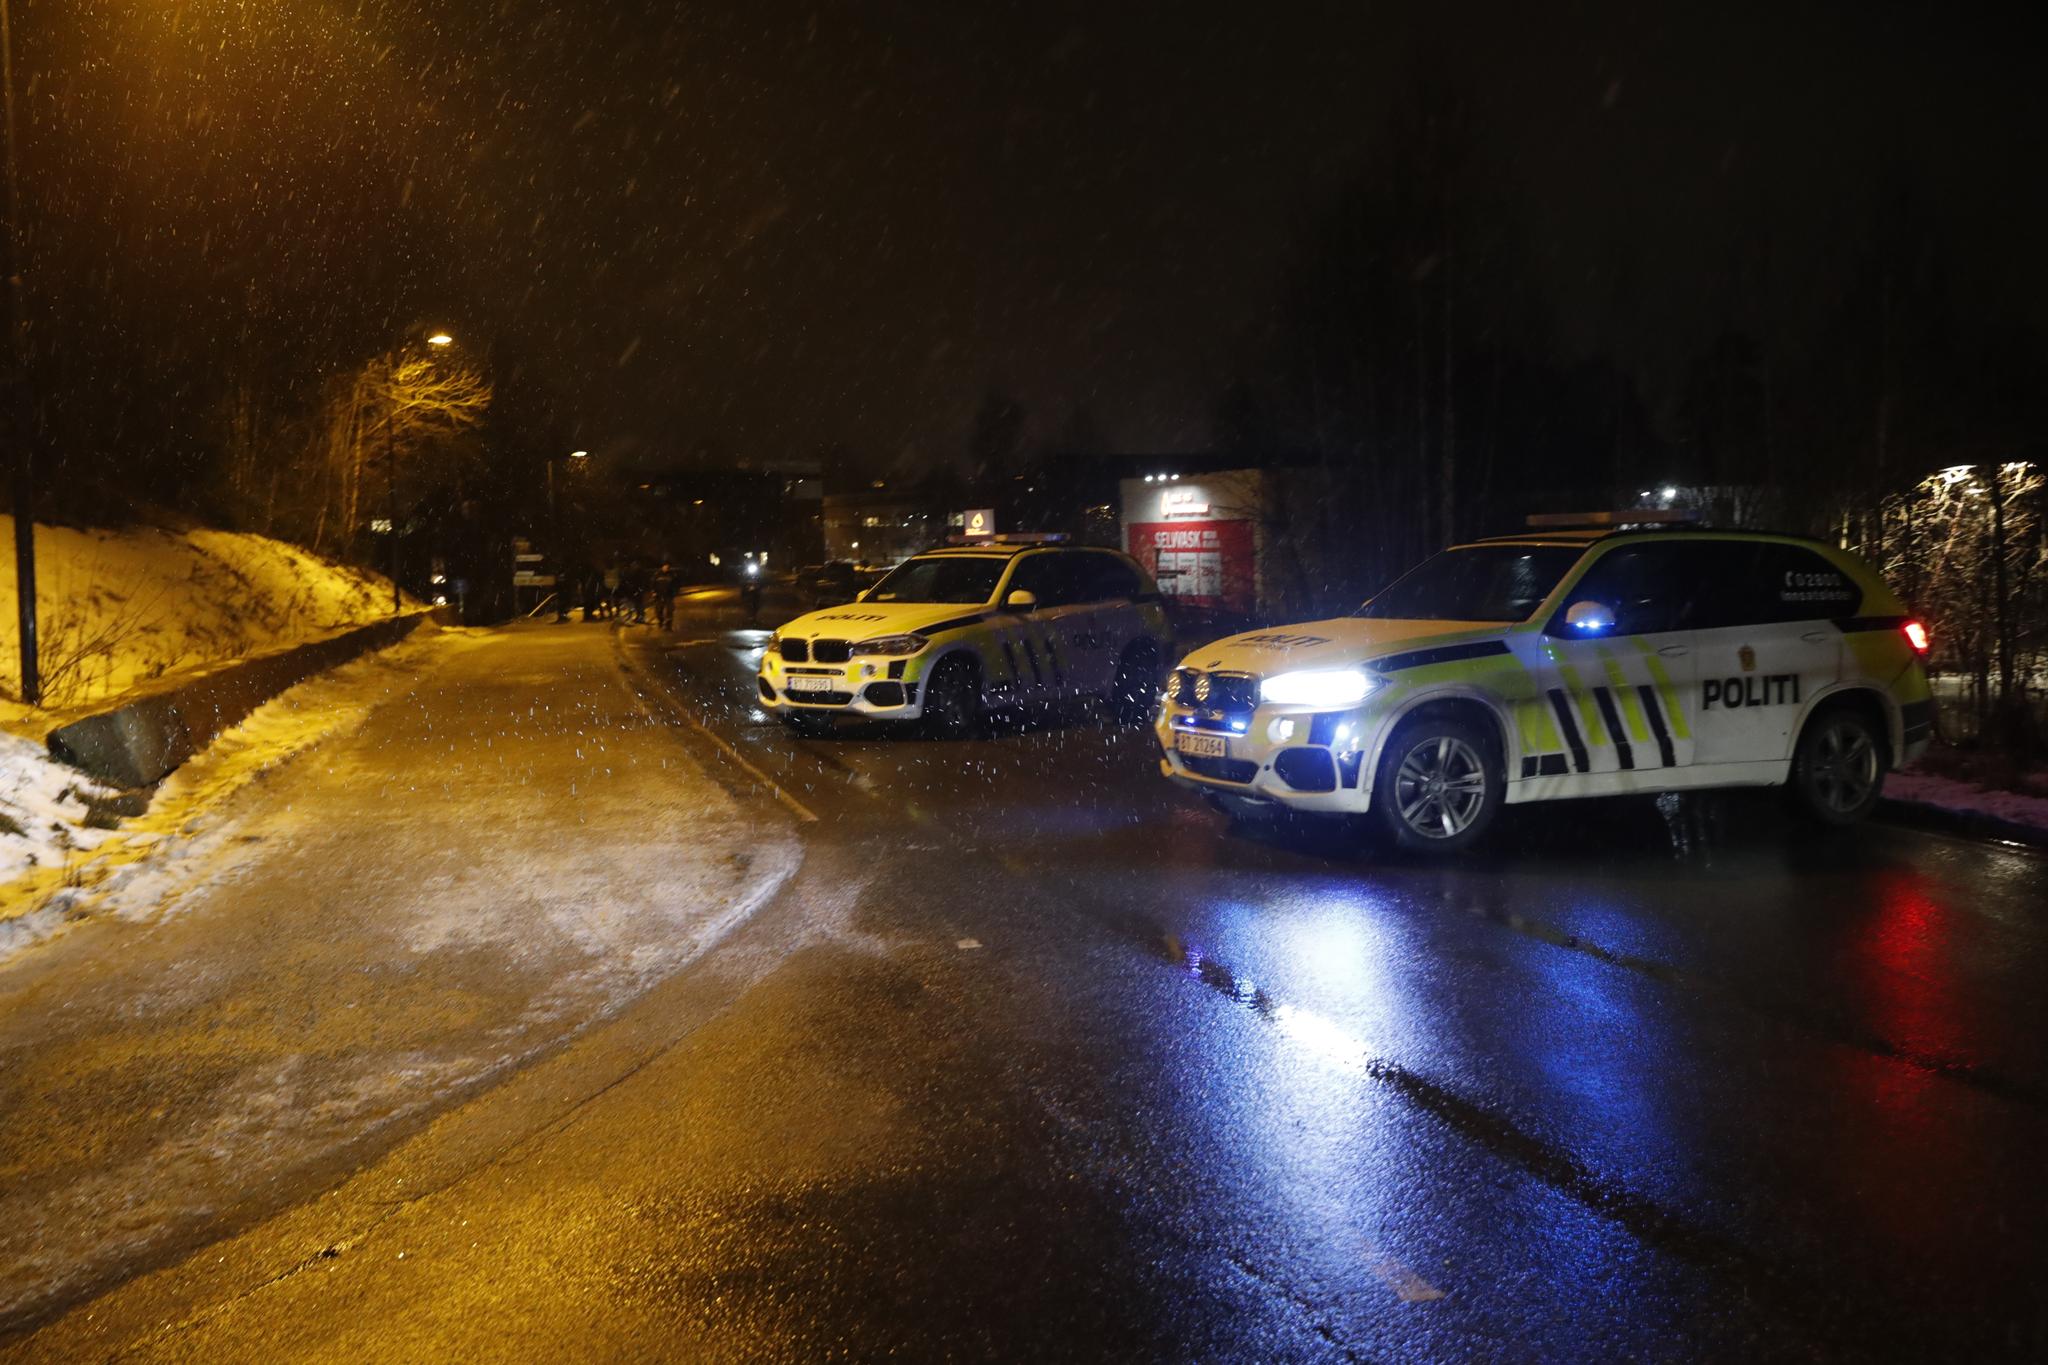 Mannen som døde av skader utendørs i Hokksund mandag kveld, obduseres torsdag. Politiet etterforsker saken som et mulig drap. Ingen er pågrepet i saken. 